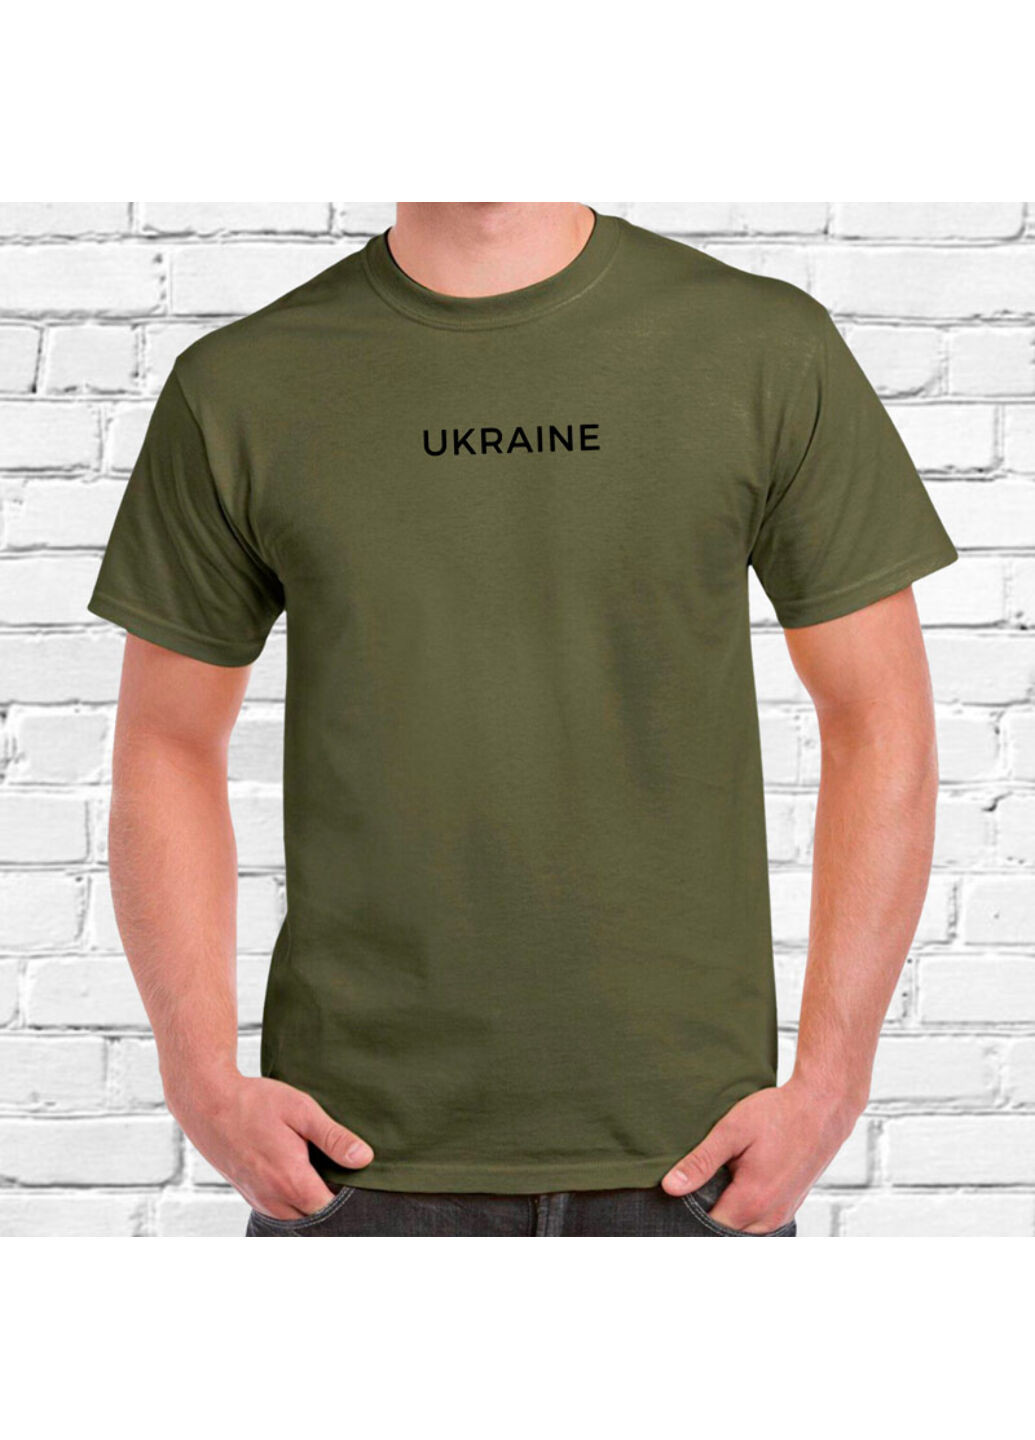 Хакі (оливкова) футболка з вишивкою ukraine чоловіча millytary green 3xl No Brand